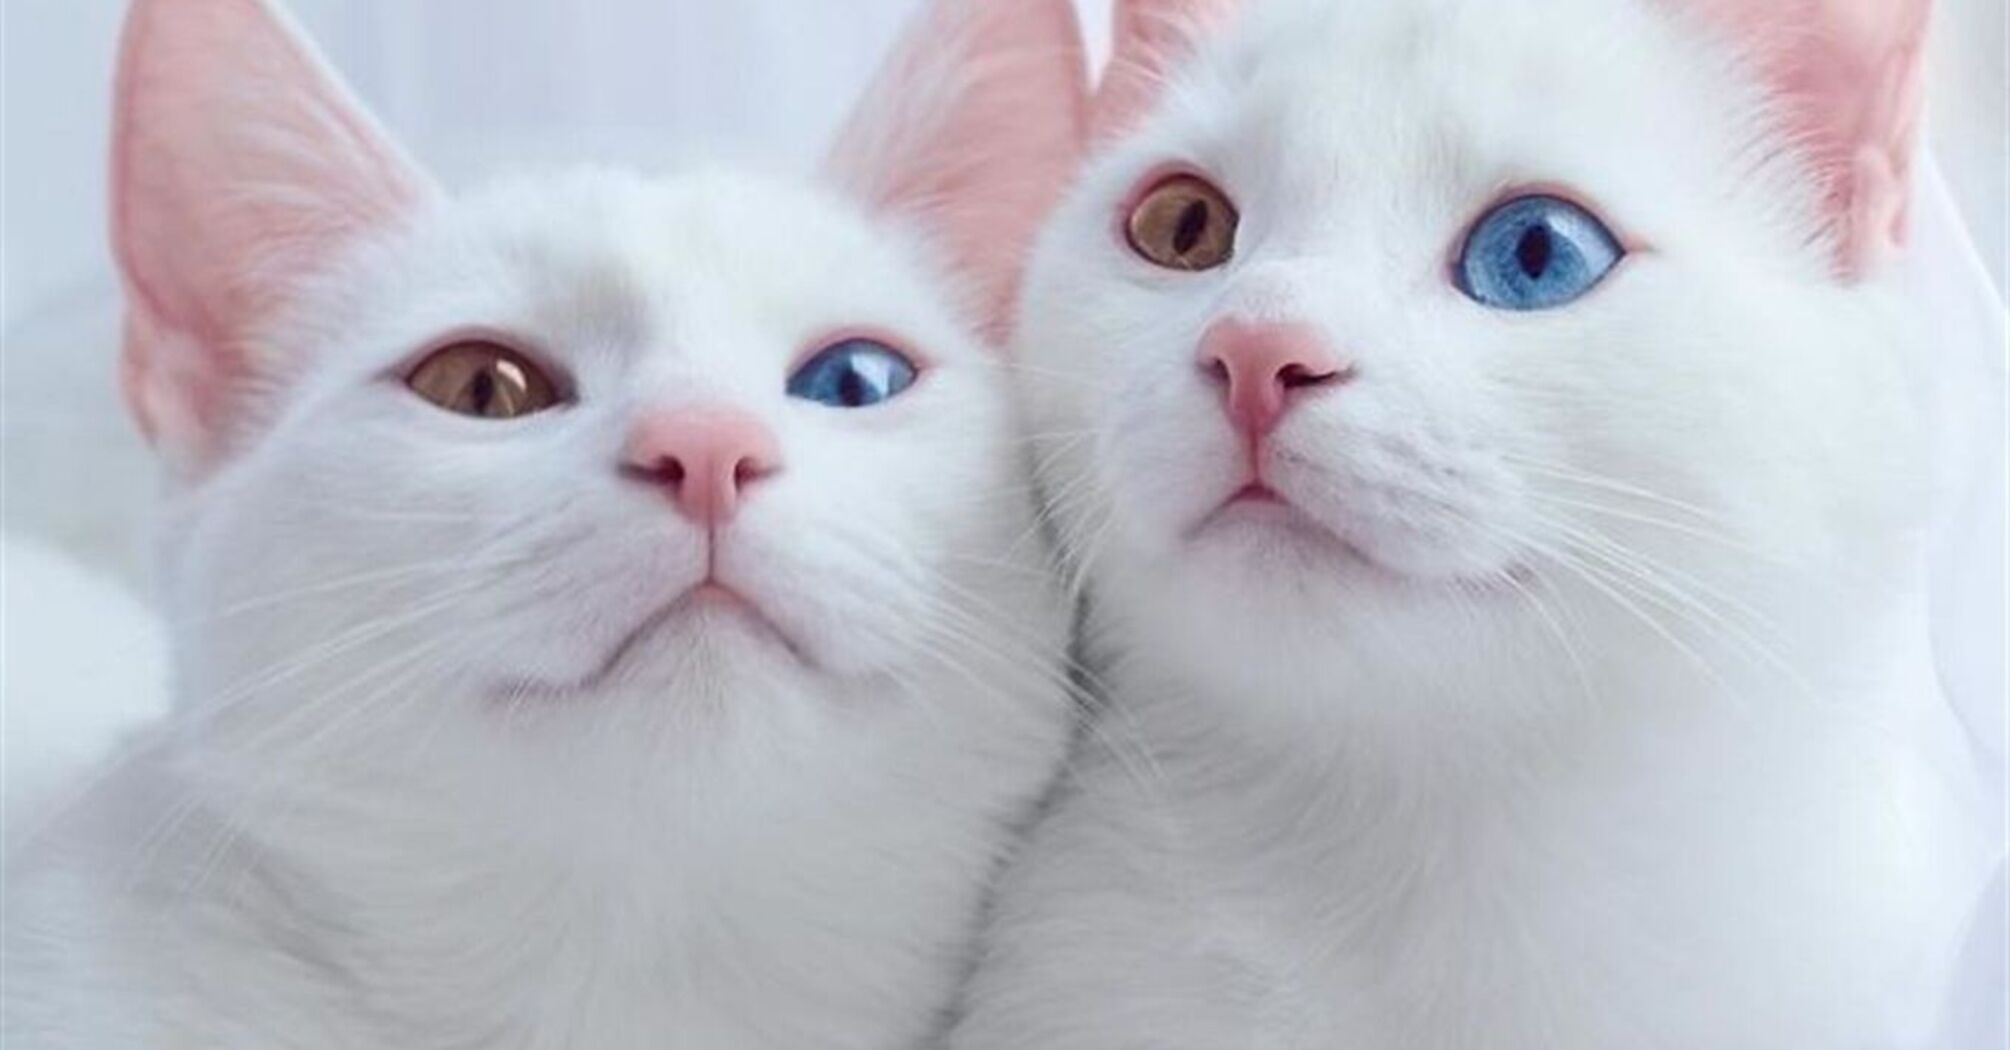 Вчені виявили, що люди неправильно розуміють поведінку голос кішок і кішок